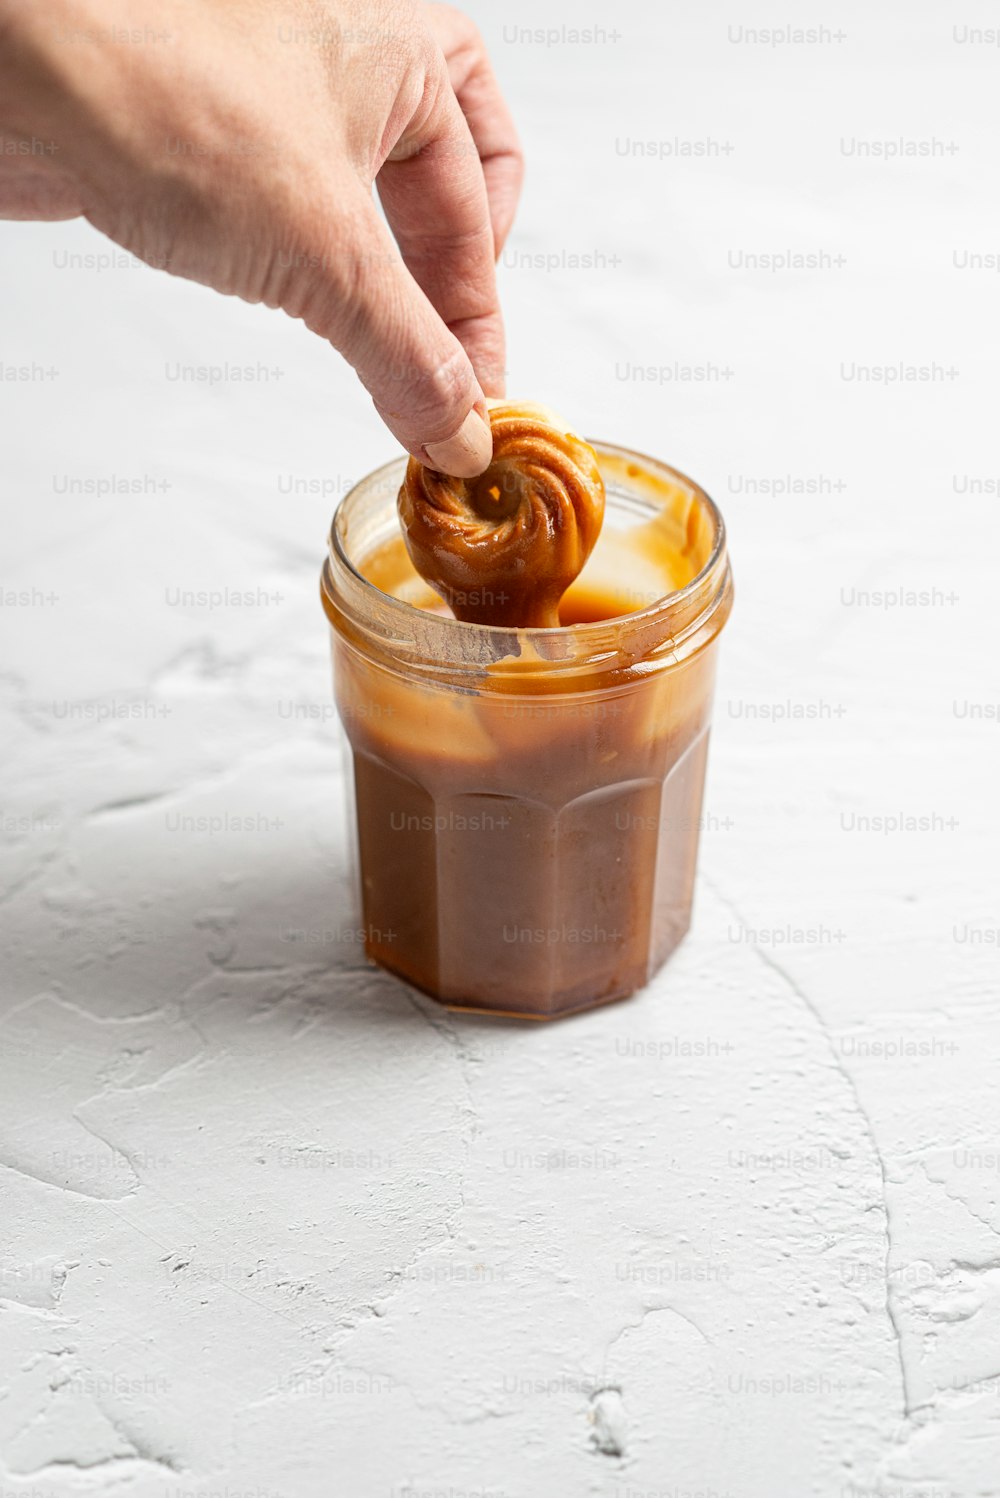 a person dipping a pretzel into a jar of caramel